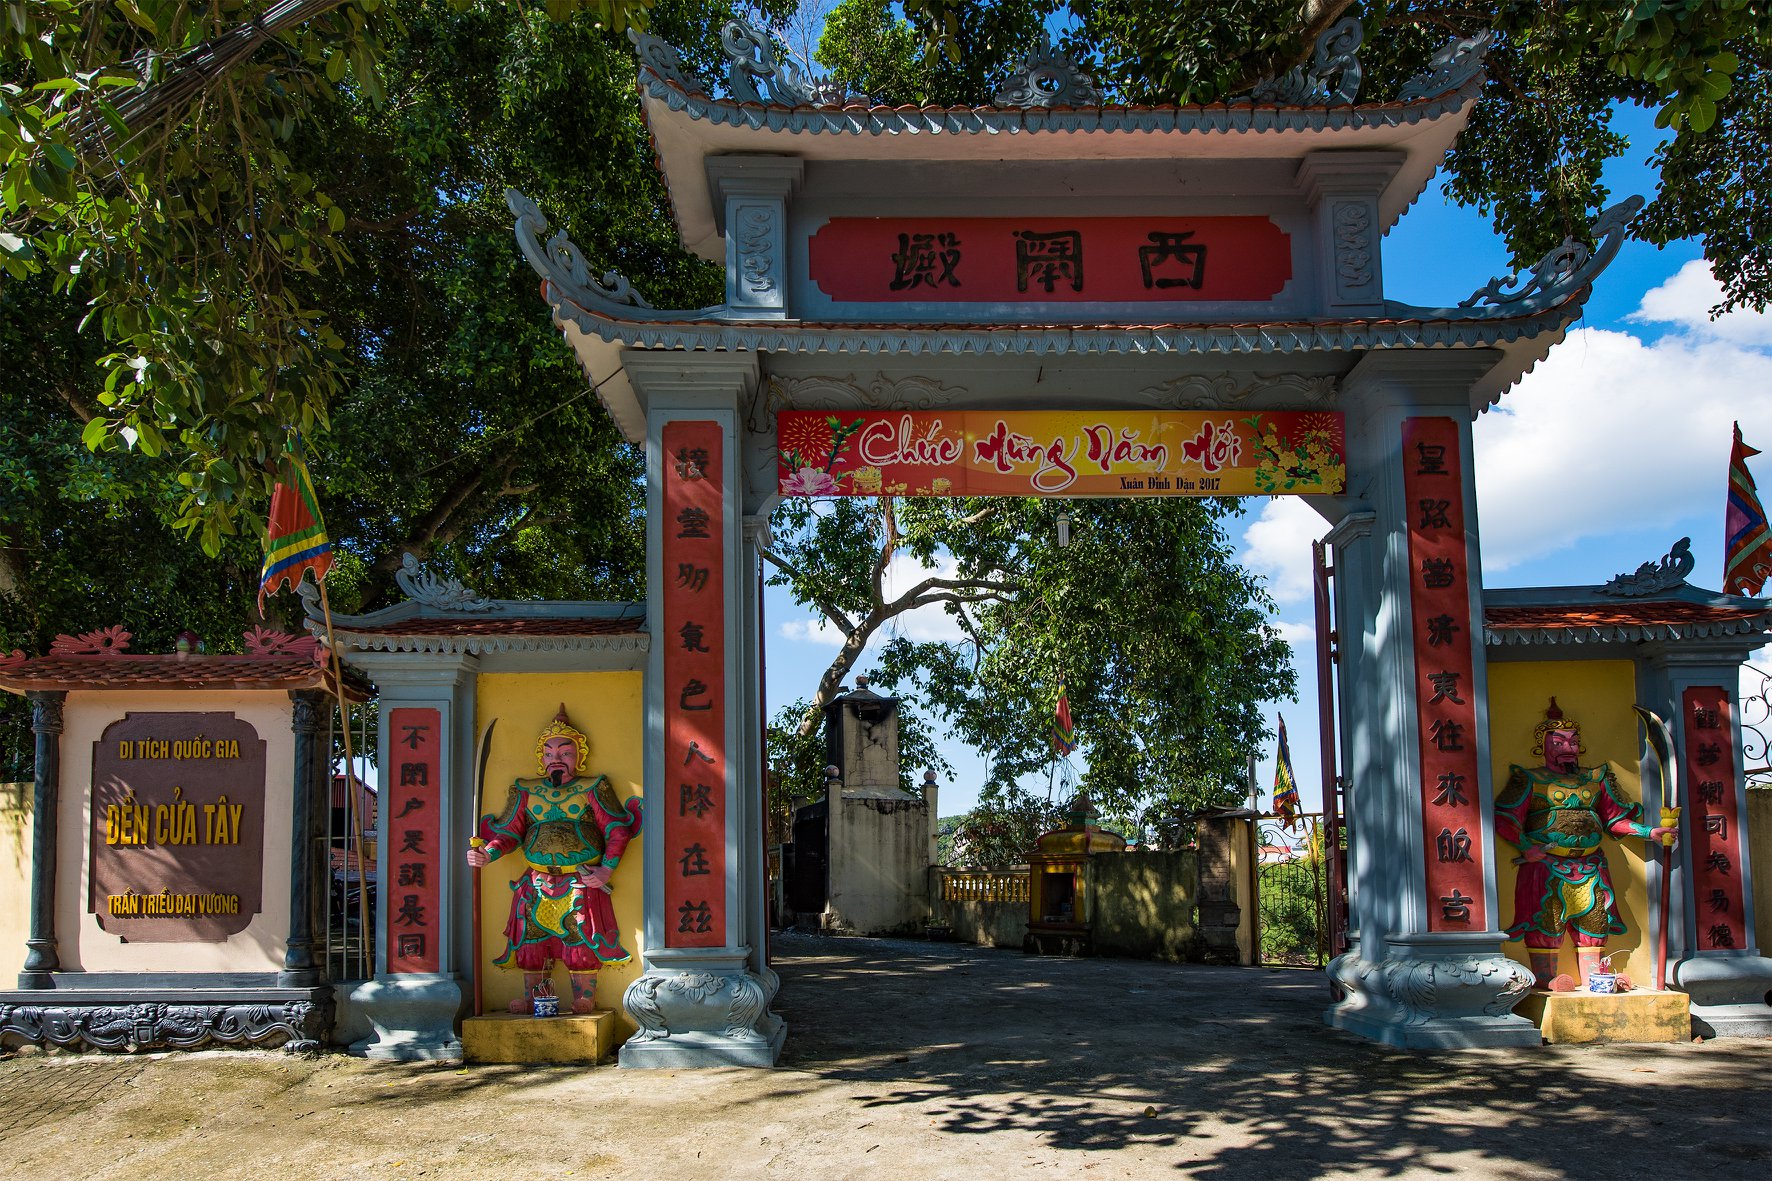 Ý nghĩa của di tích Tứ trấn thành Lạng Sơn trong việc phát triển kinh tế du lịch của thành phố Lạng Sơn